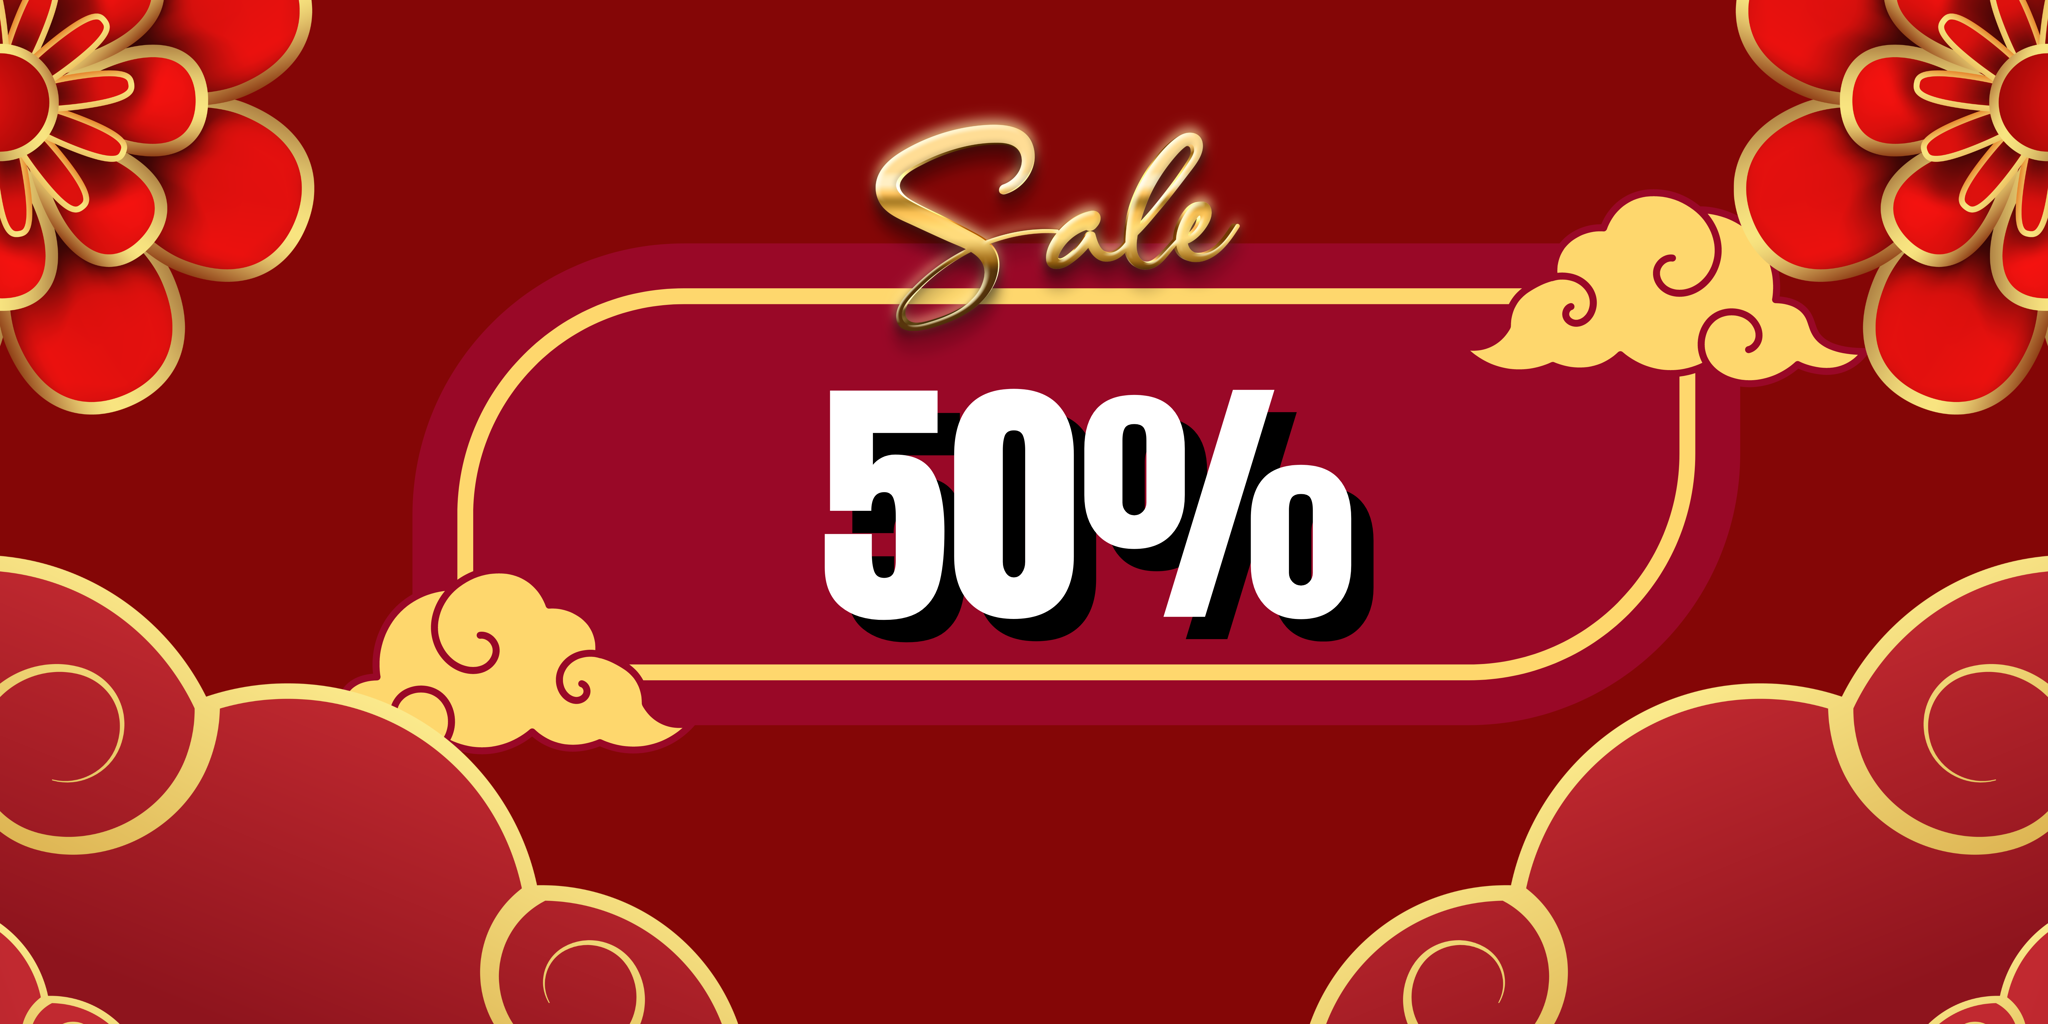 SALE 50%